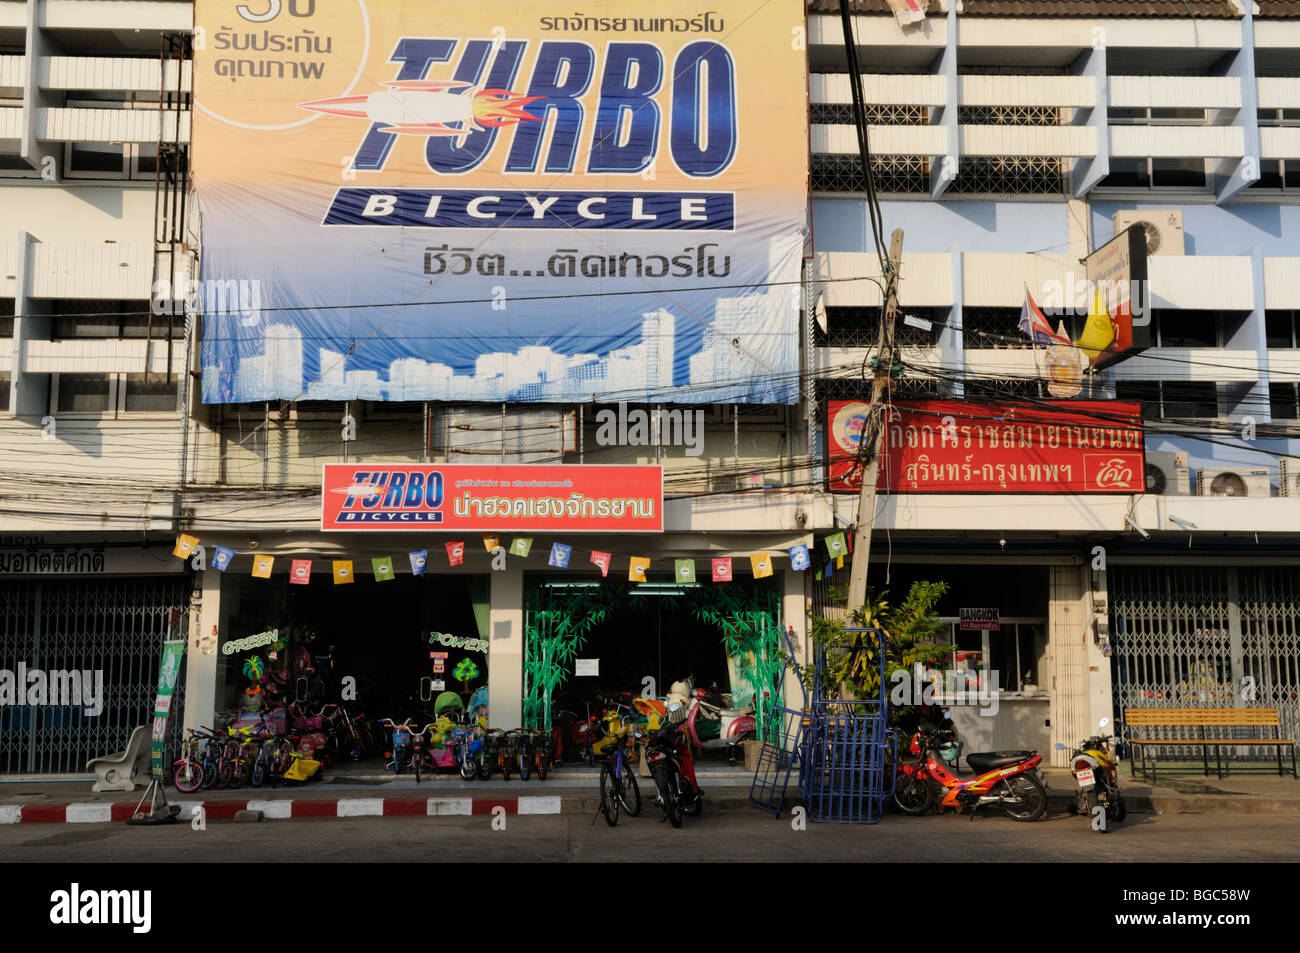 Conmoción espina lado Tailandia, Surin; Escena callejera con tienda de bicicletas Turbo  Fotografía de stock - Alamy